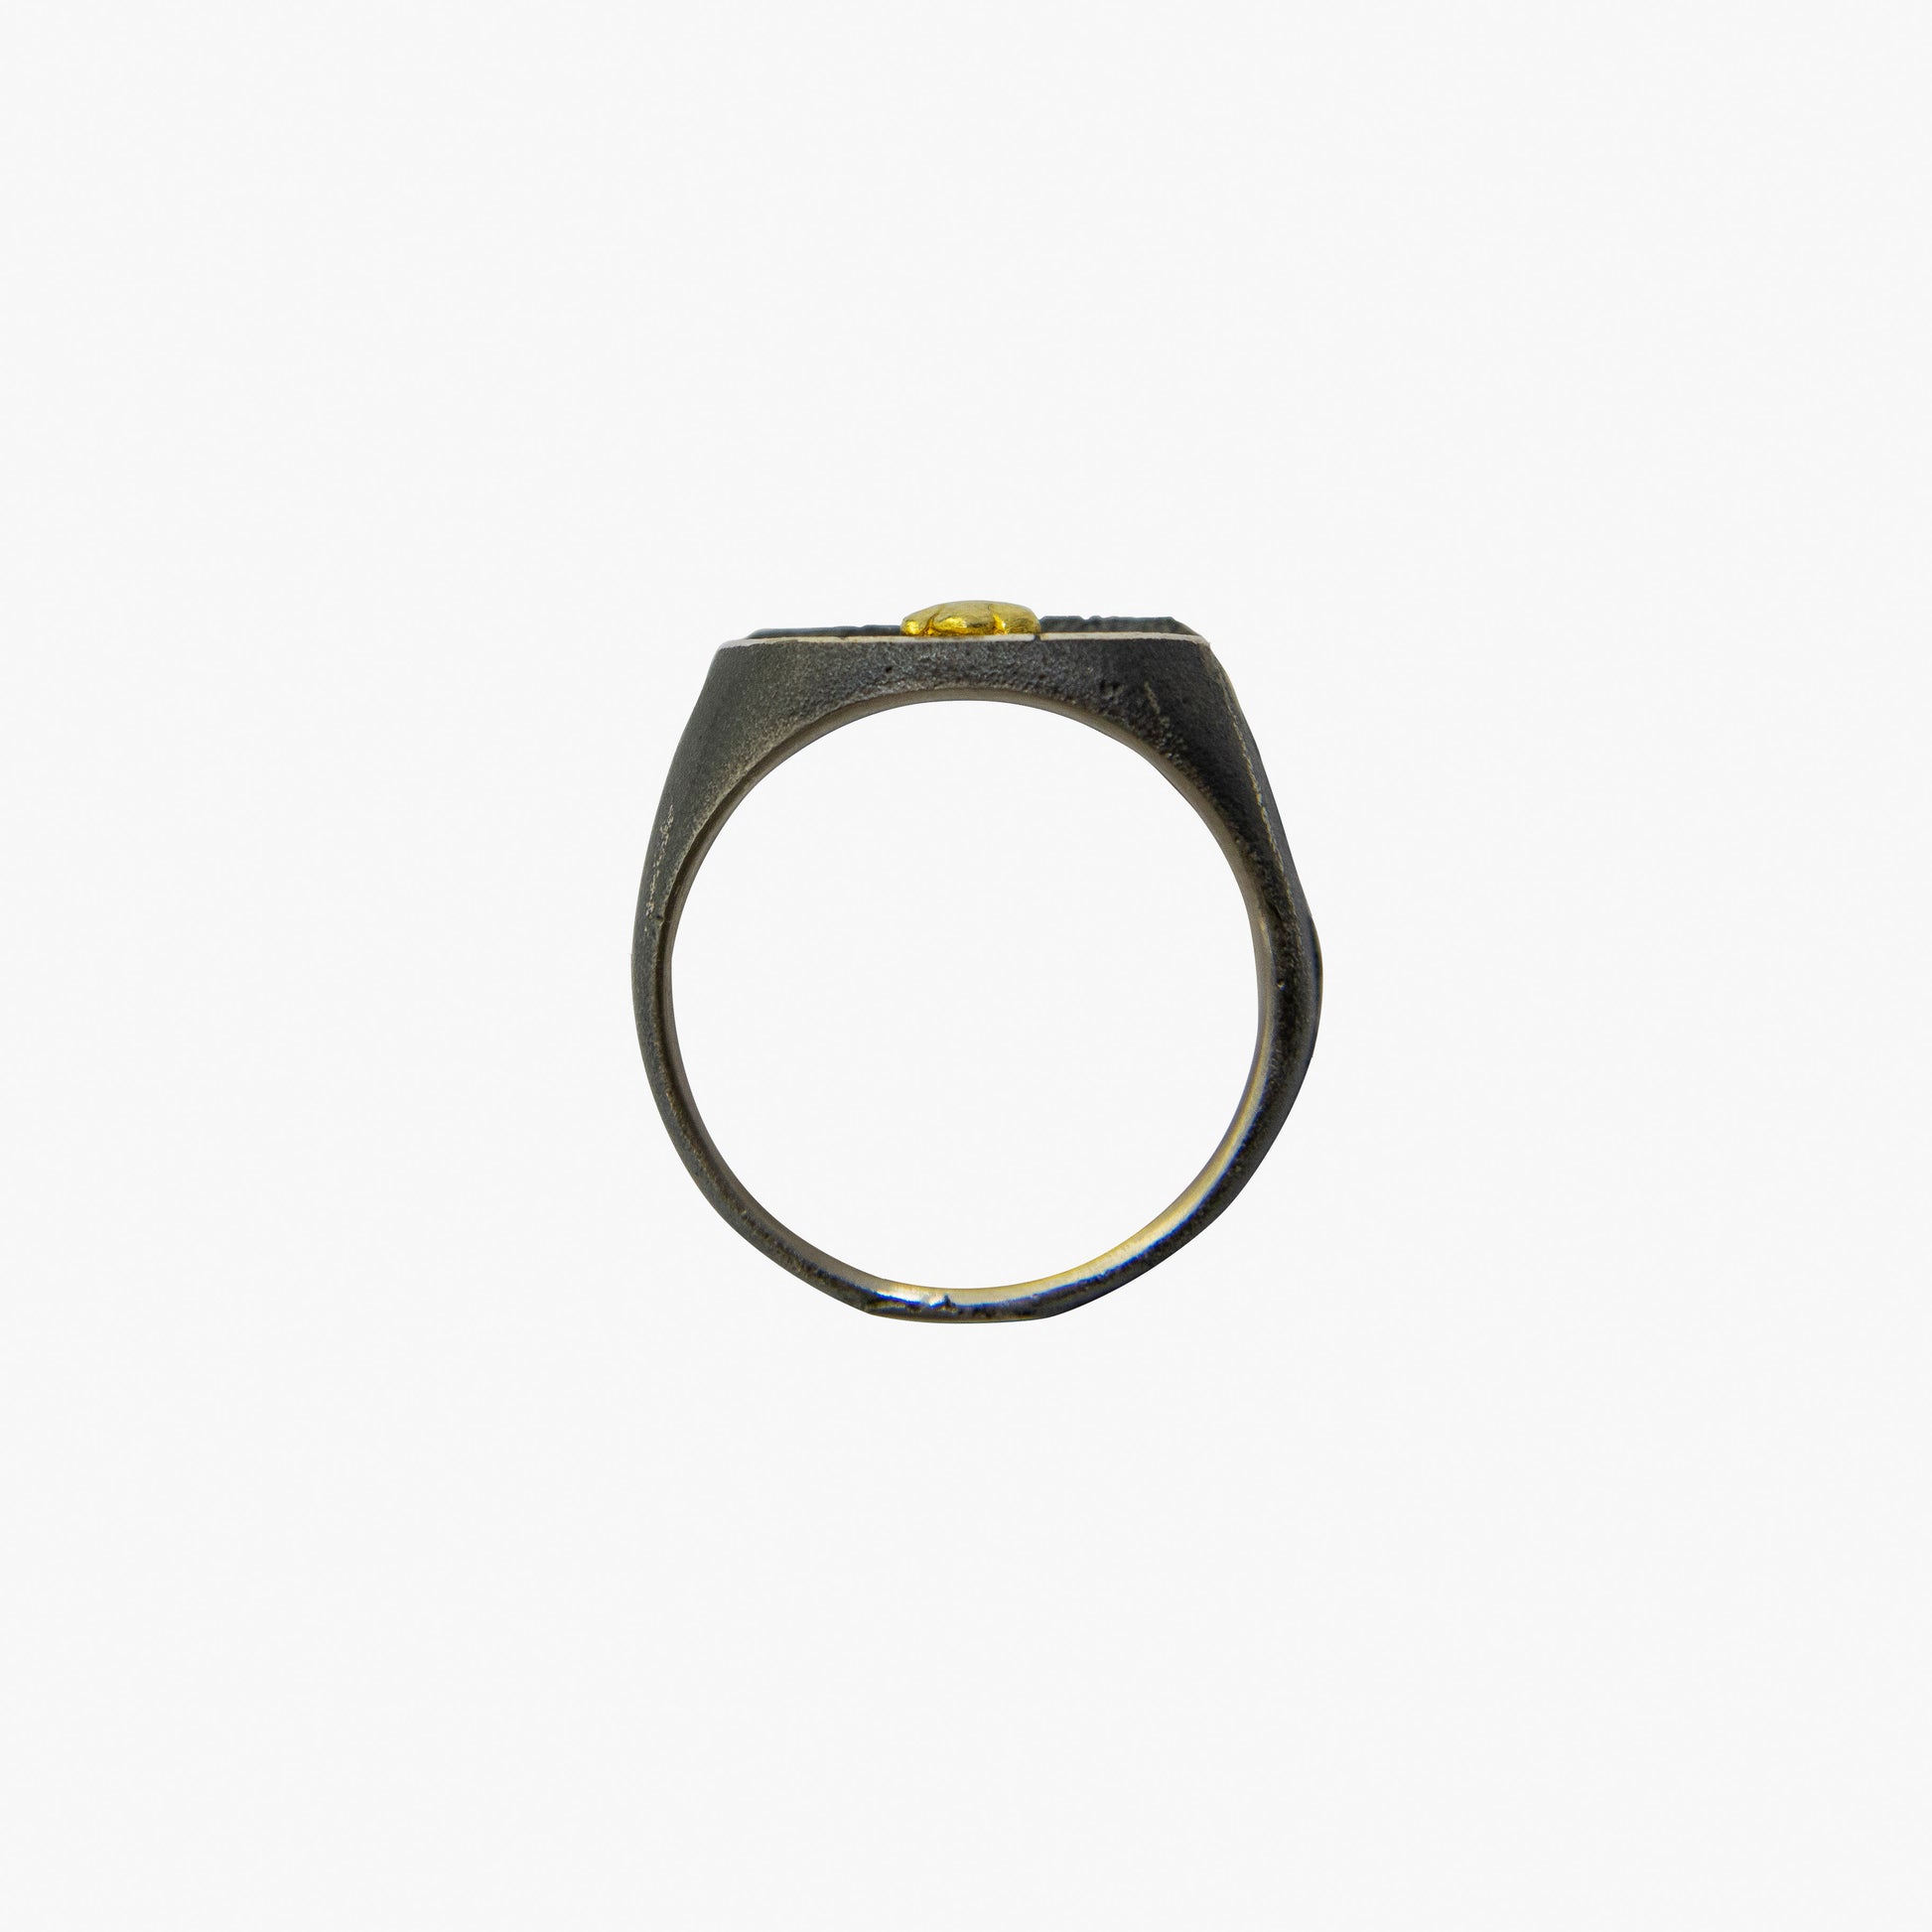 Der Ring OAK besteht aus recyceltem Silber und Sand